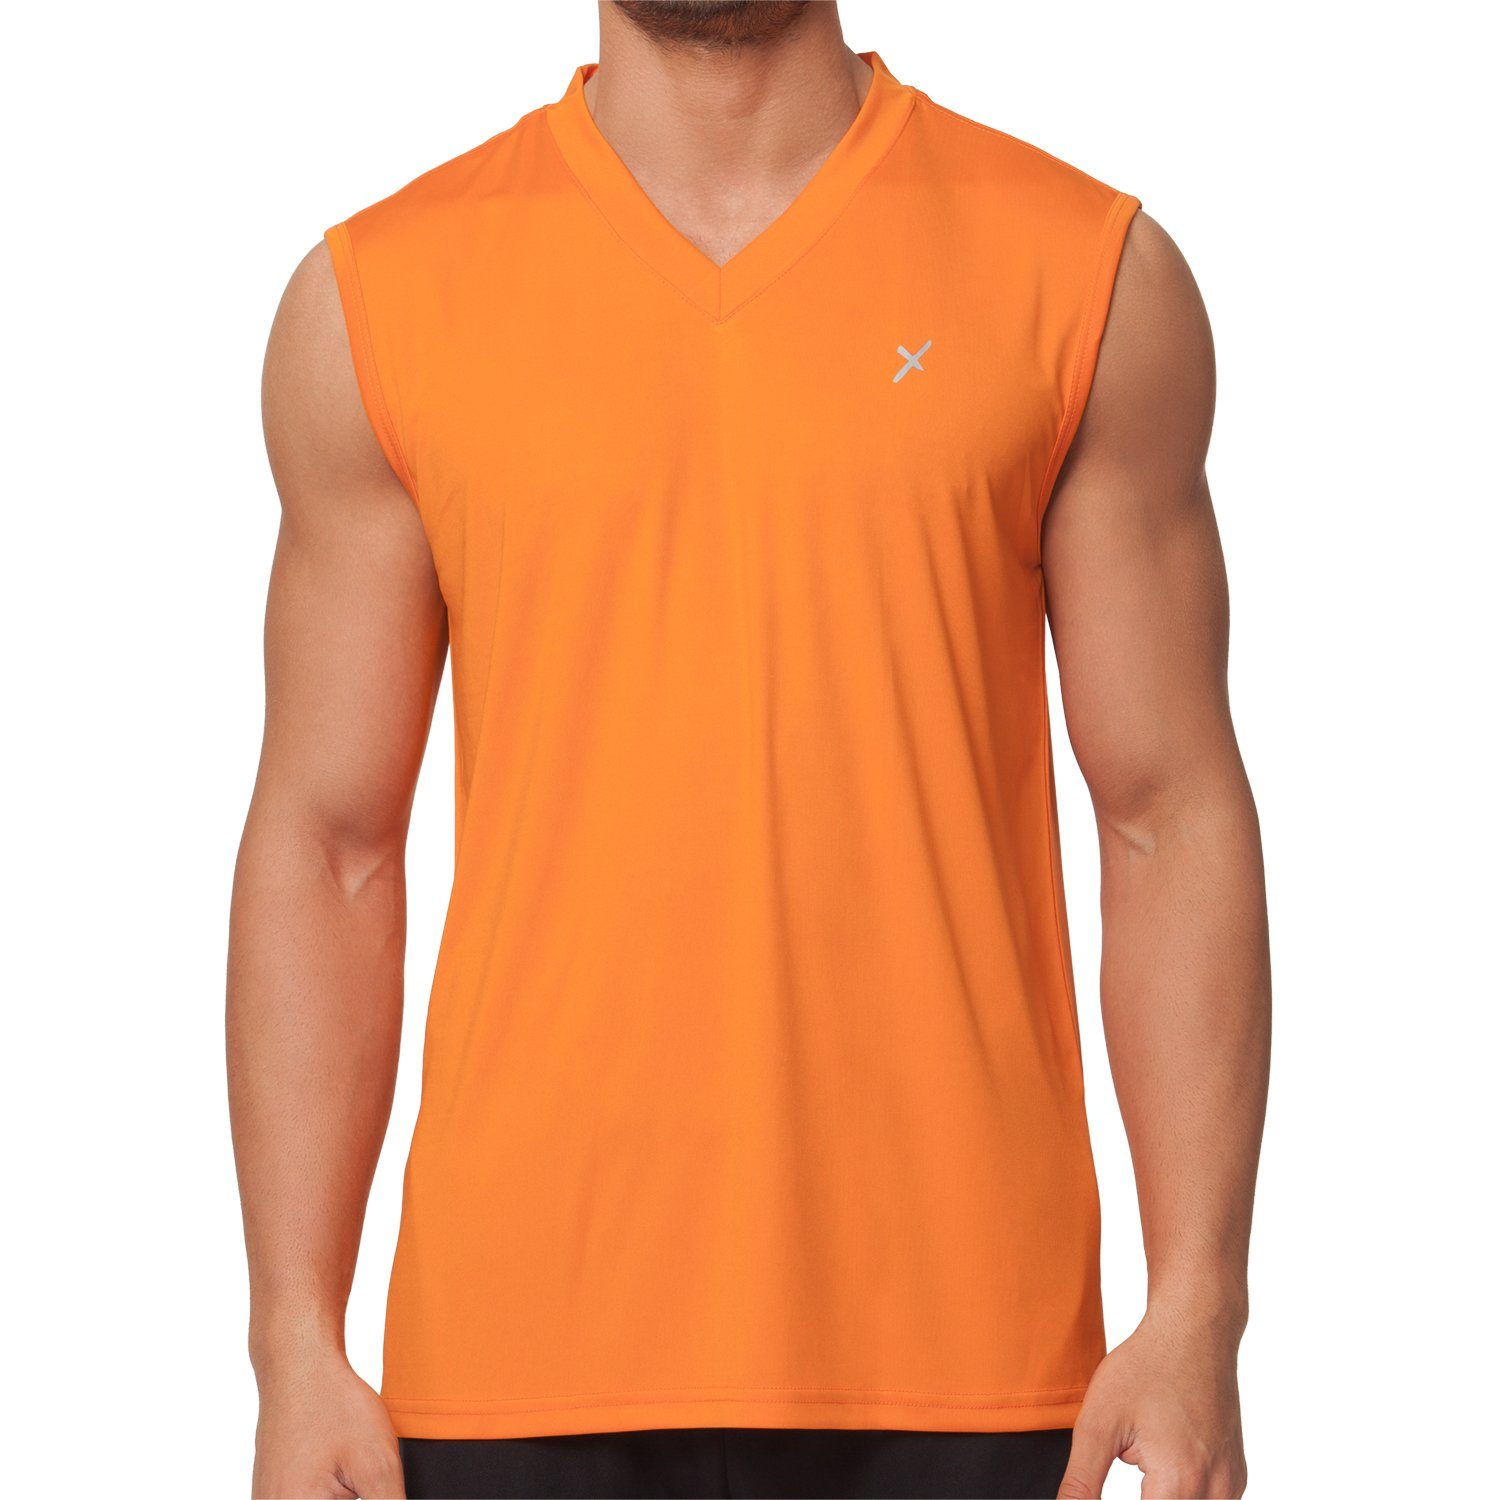 CFLEX Collection Sportswear Muscle-Shirt Orange Herren Fitness Shirt Sport Trainingsshirt